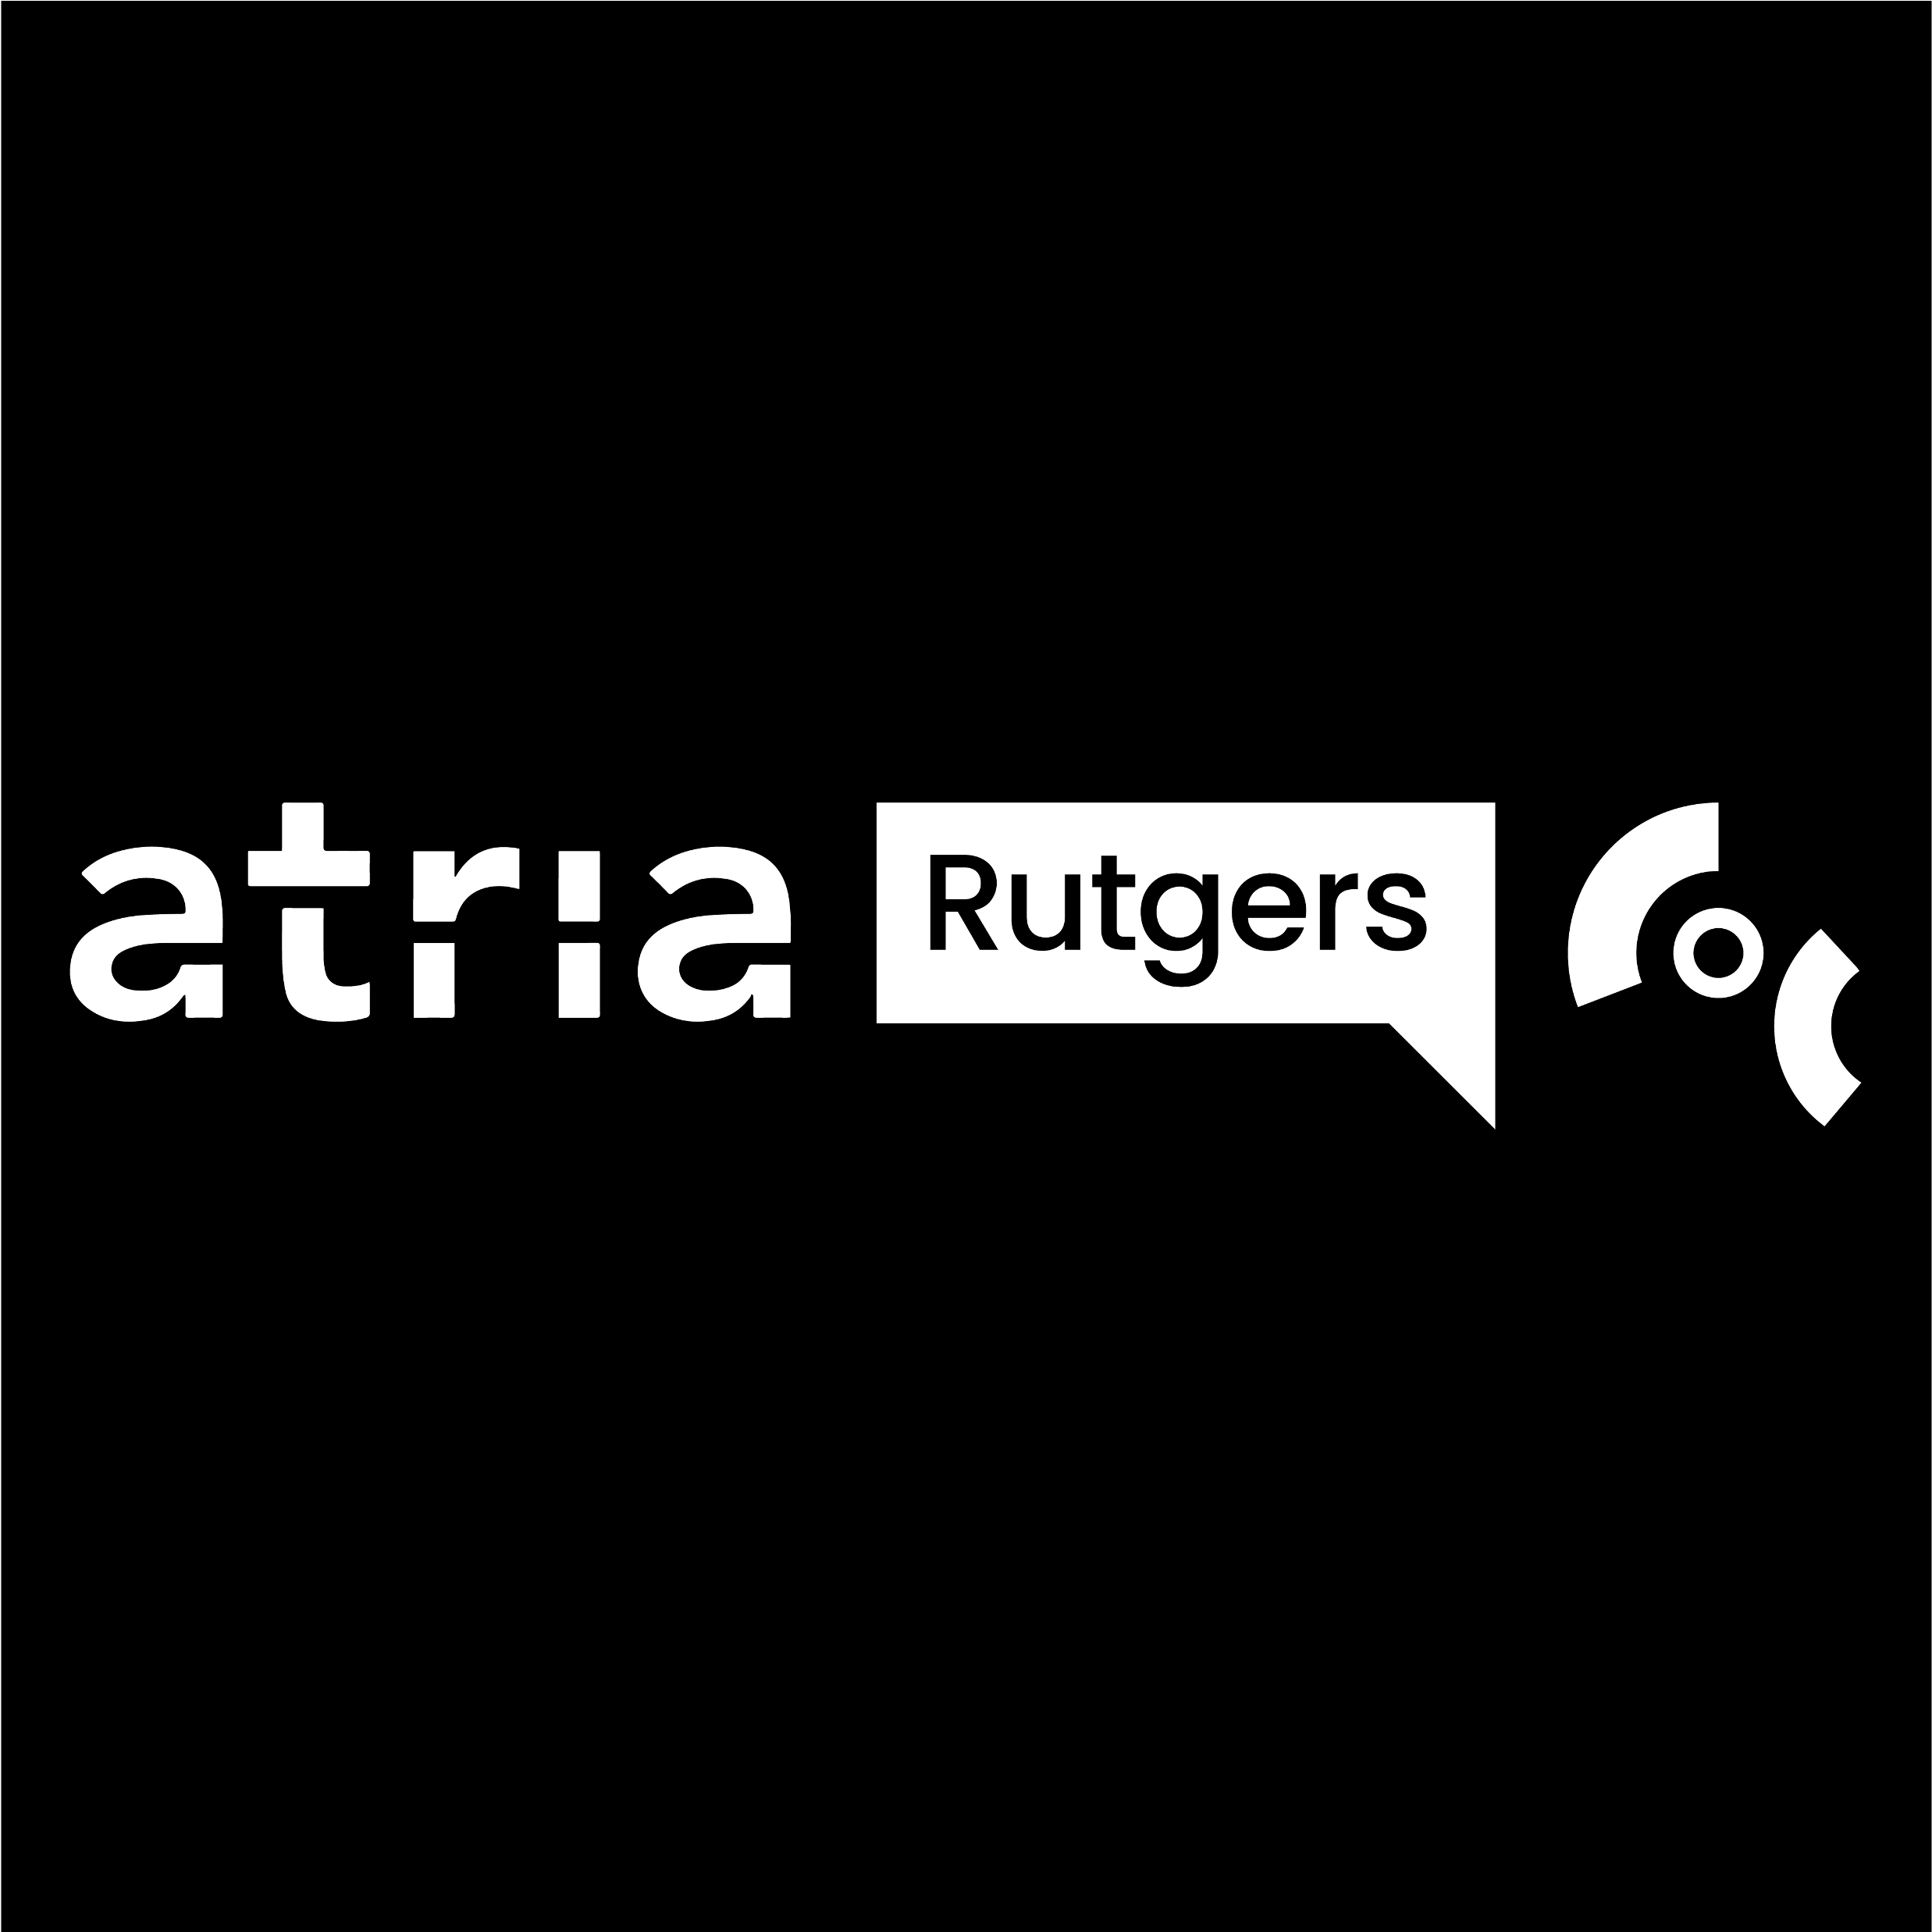 De logo's van respectievelijk Atria, Rutgers en COC in wit naast elkaar, tegen een zwarte achtergrond